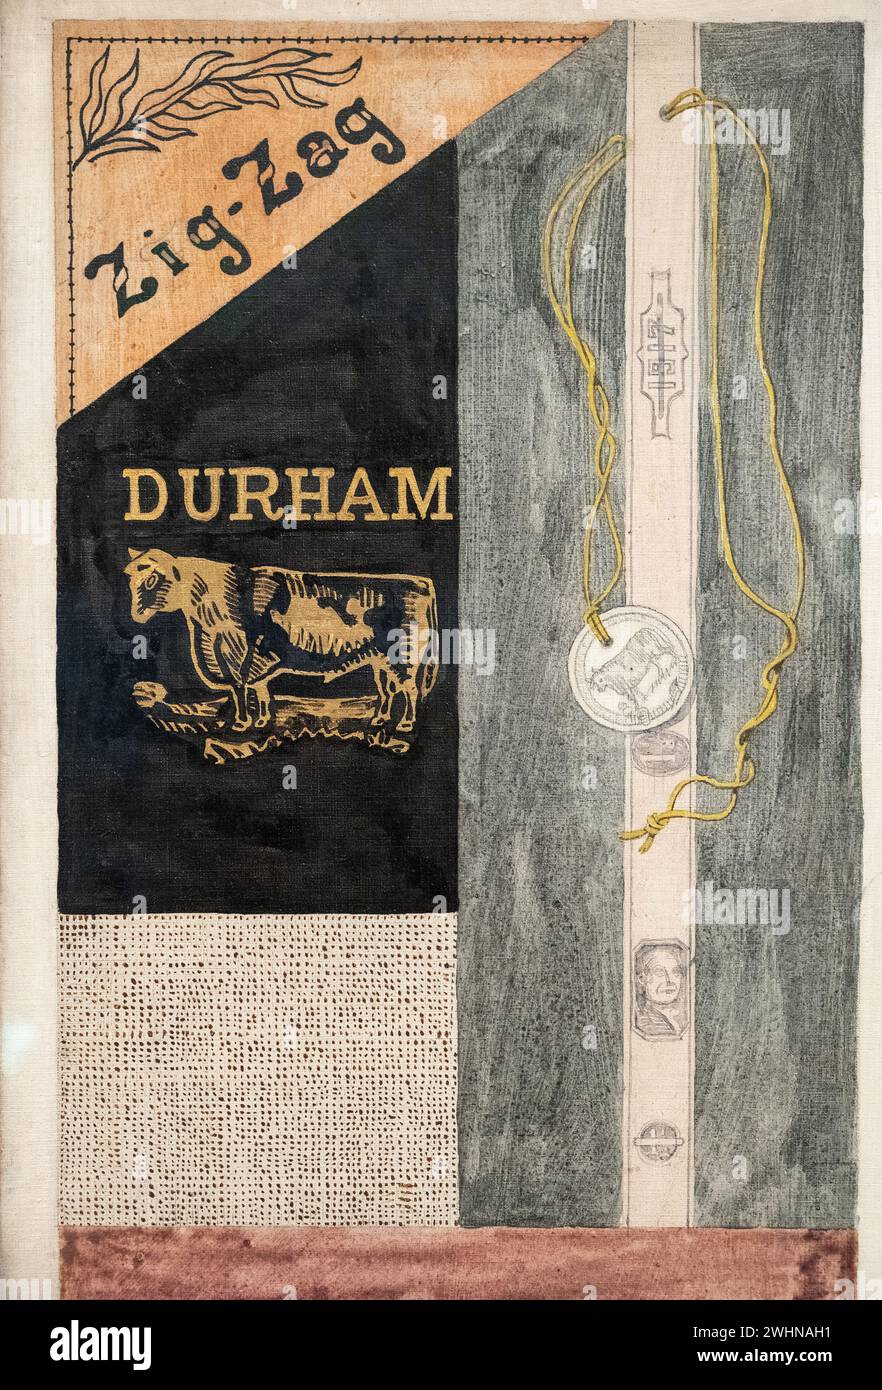 Stuart Davis 1921 huile sur toile 'Bull Durham' au Baltimore Museum of Art Banque D'Images